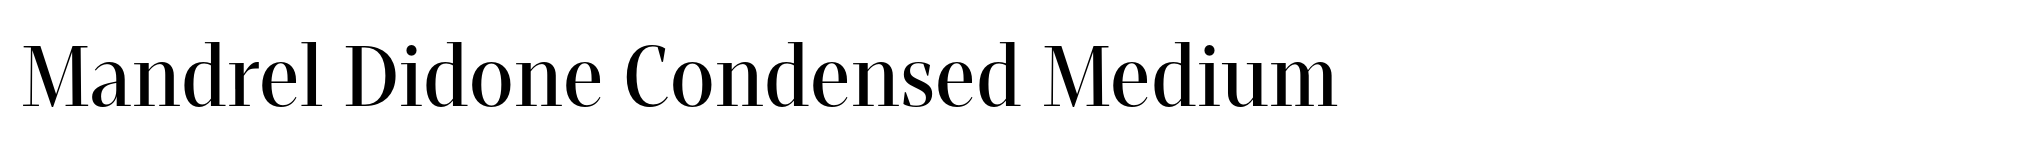 Mandrel Didone Condensed Medium image